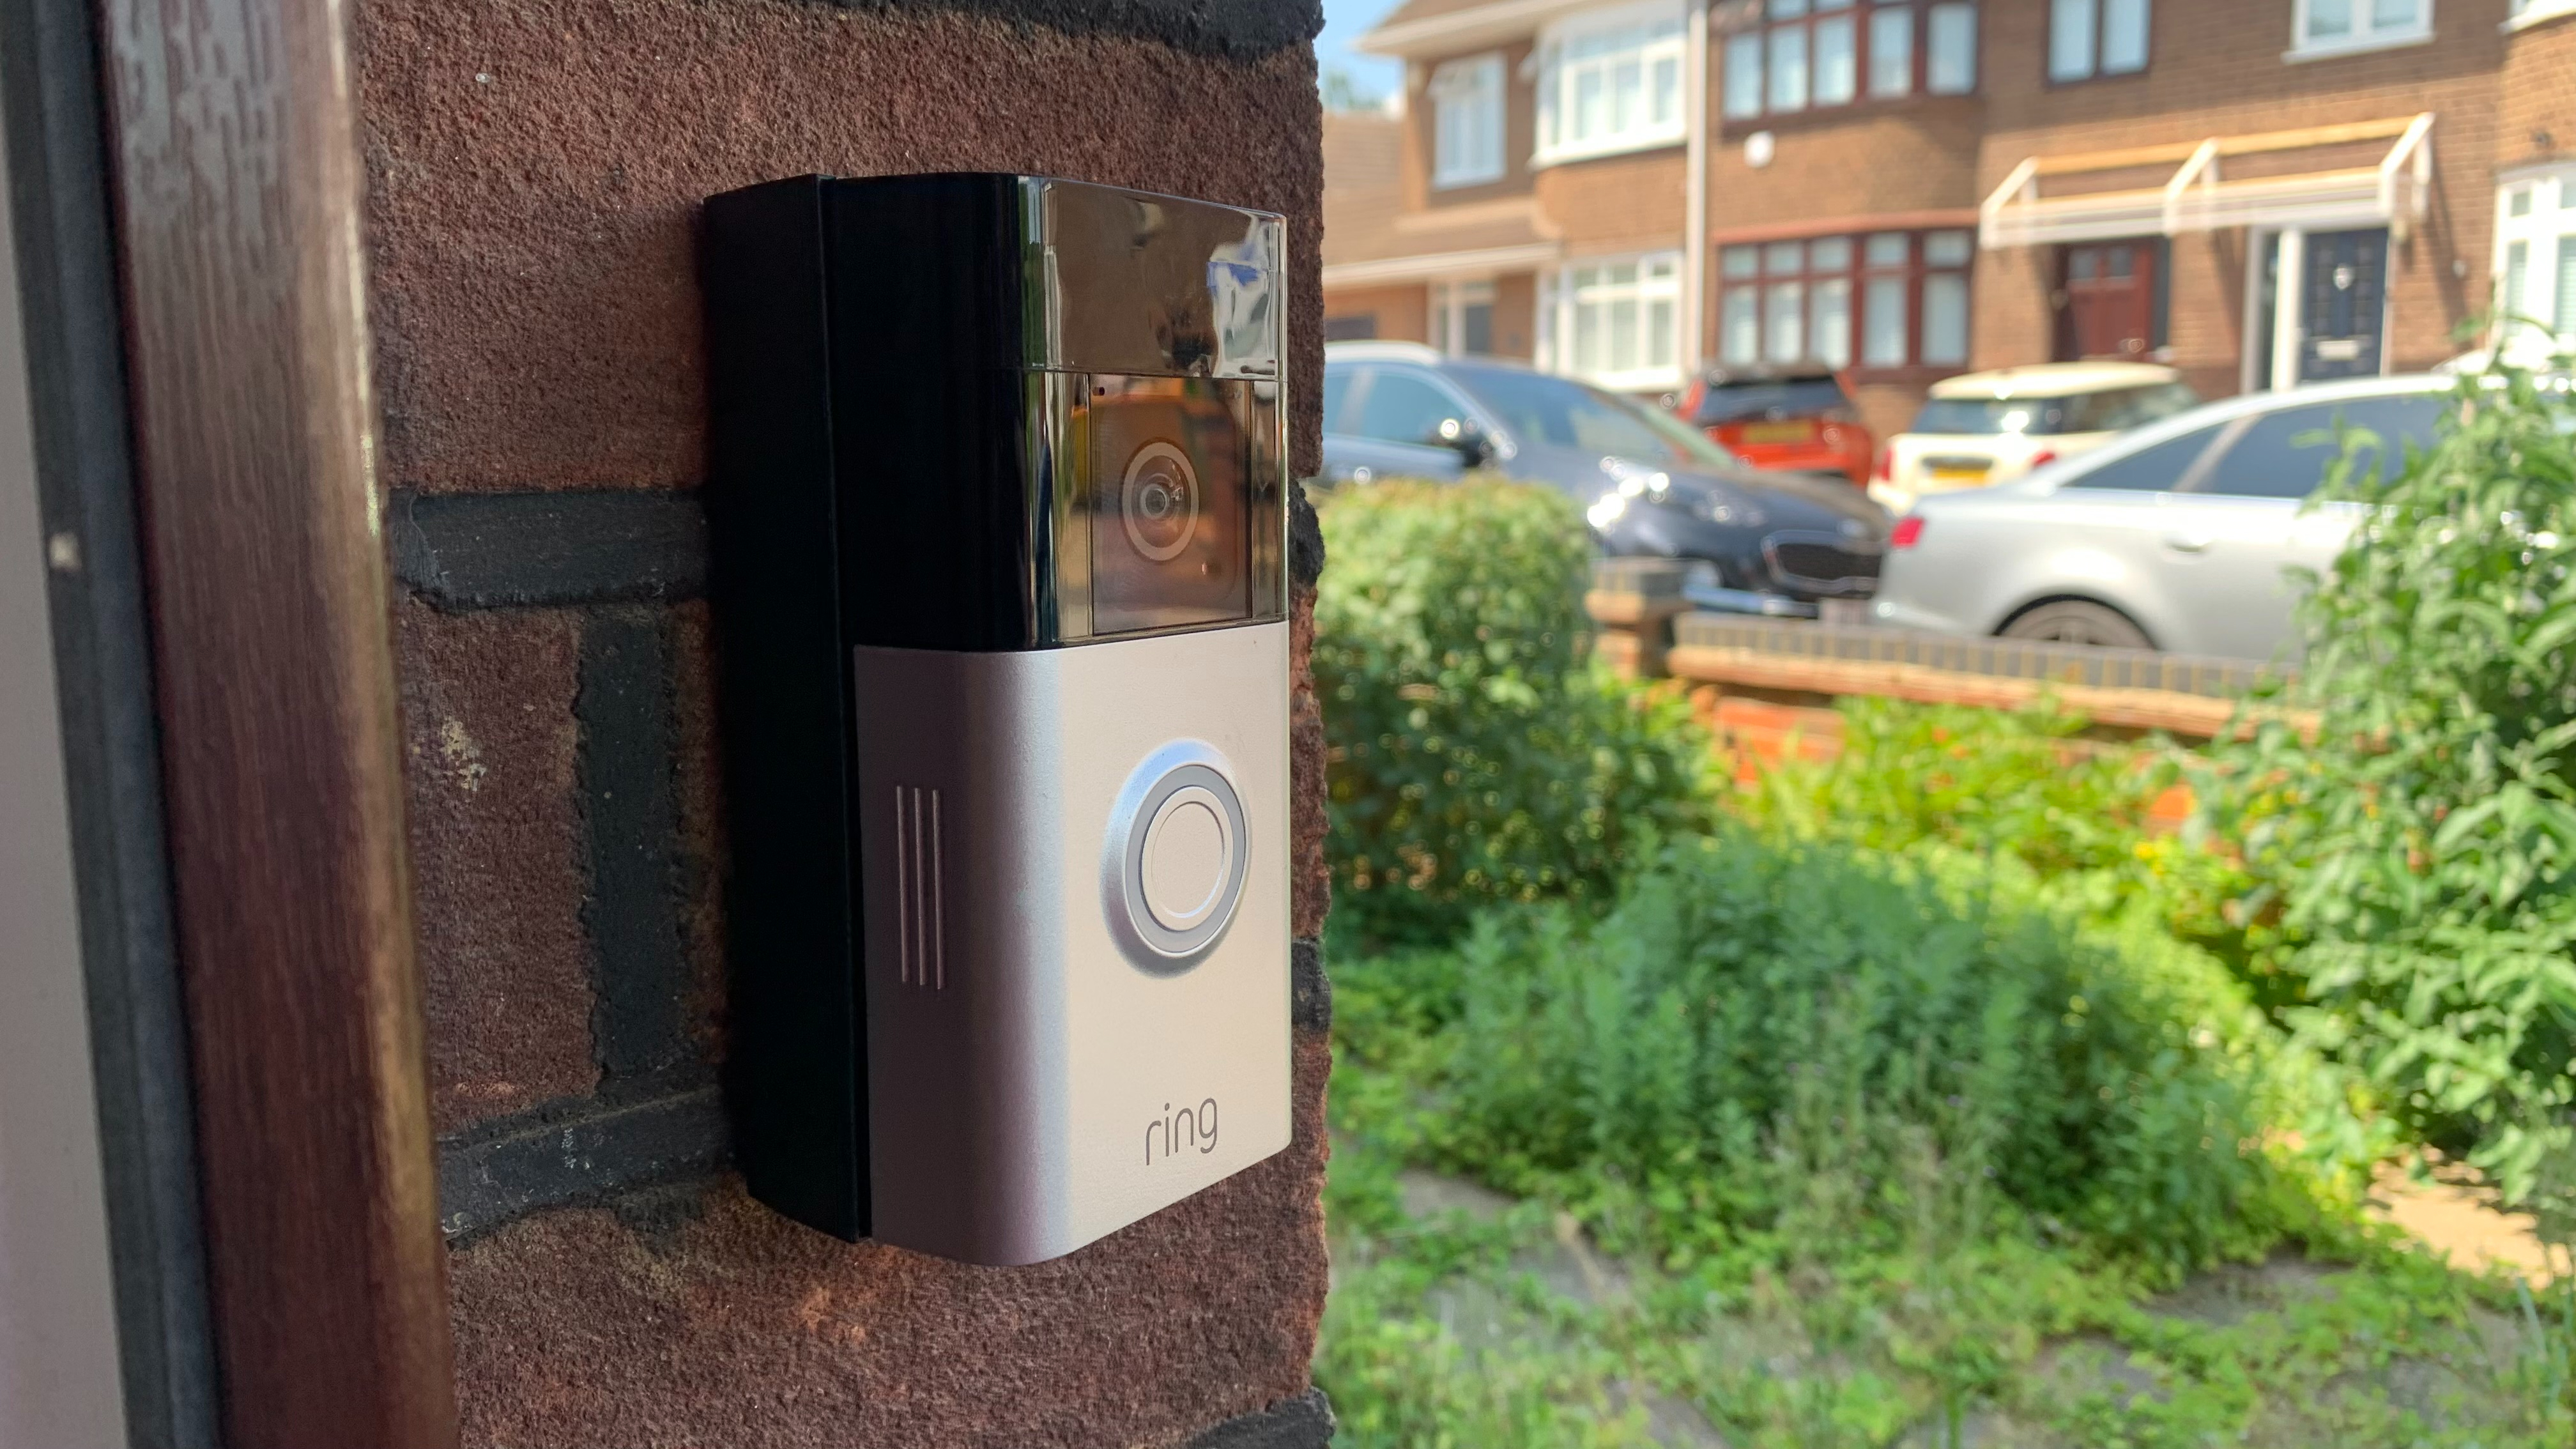 Battery Doorbell Plus (Video Doorbell)